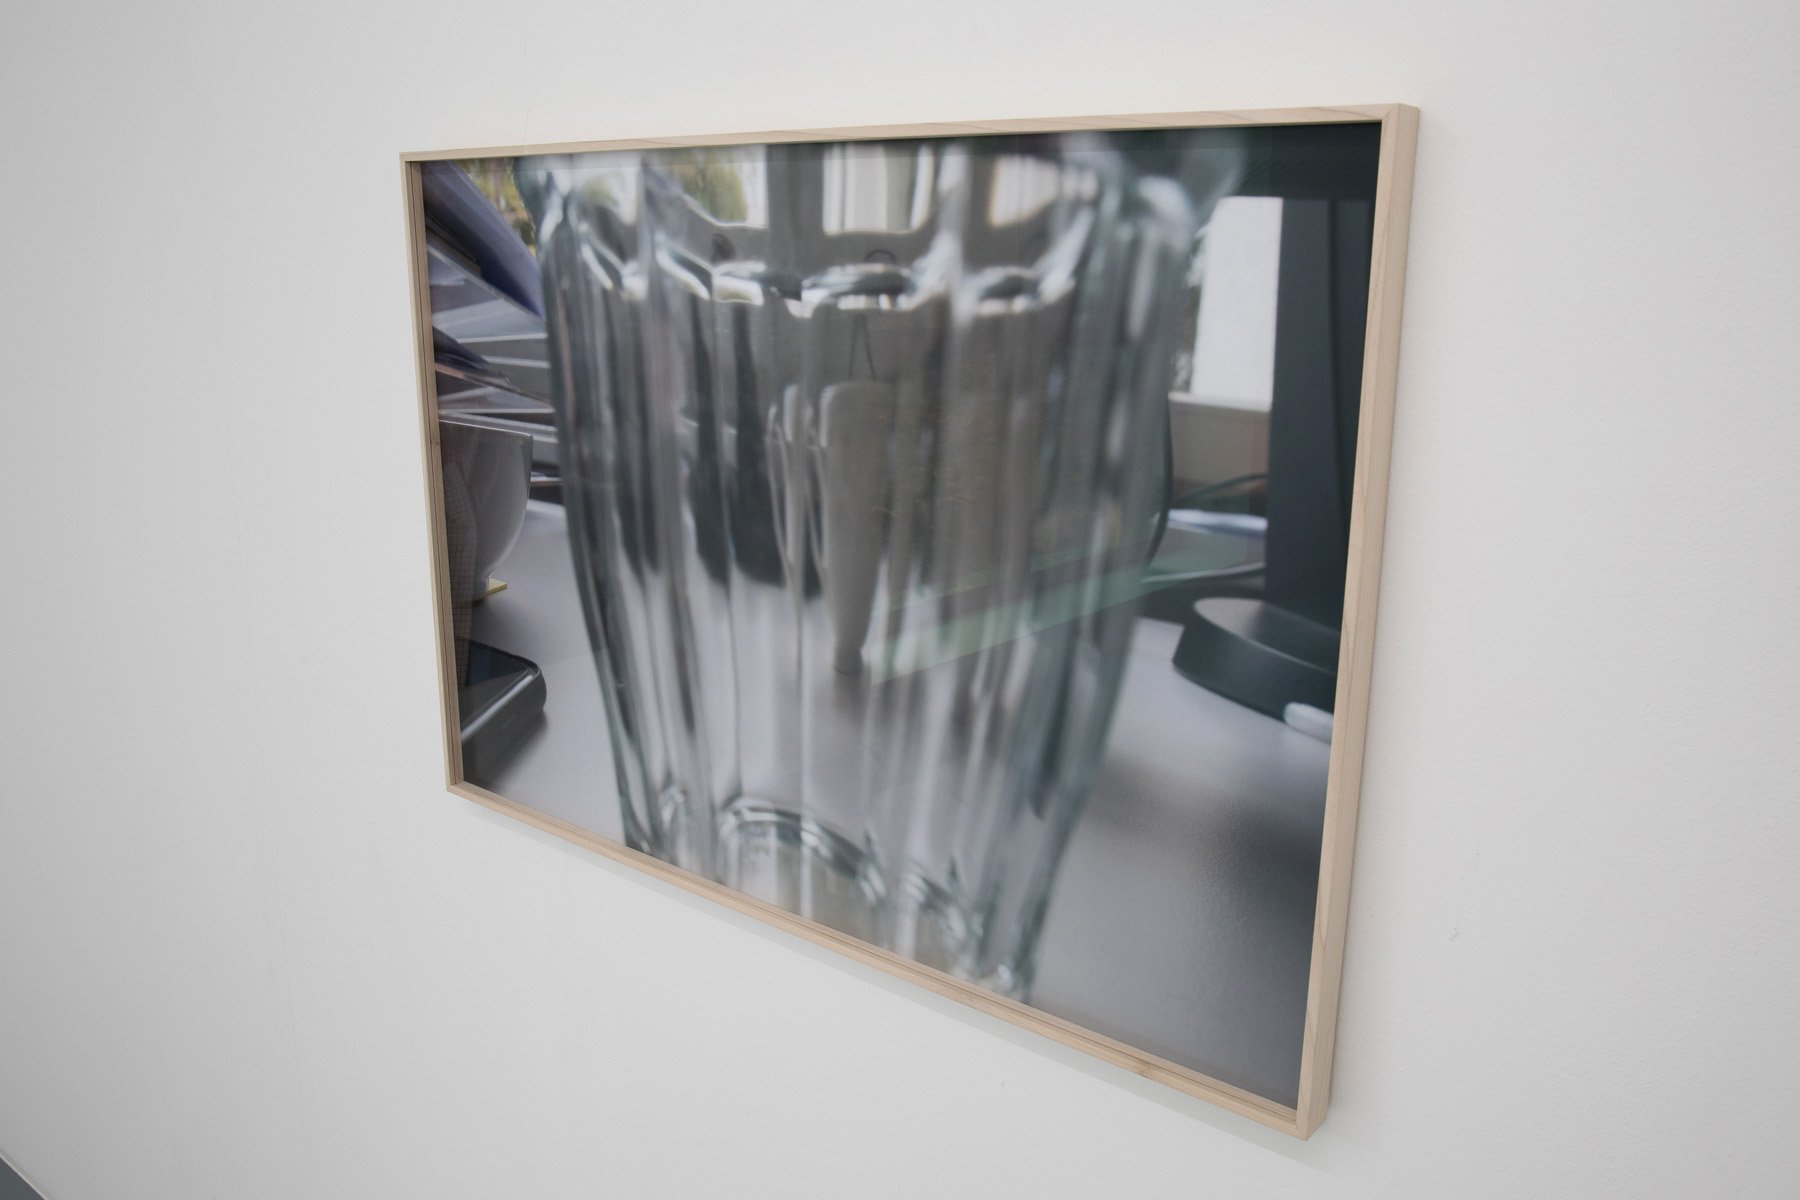 Niklas Taleb: Live in Paris, Installationsansicht, 2021, Bonner Kunstverein. Courtesy der Künstler und Lucas Hirsch, Düsseldorf. Foto: Niklas Taleb